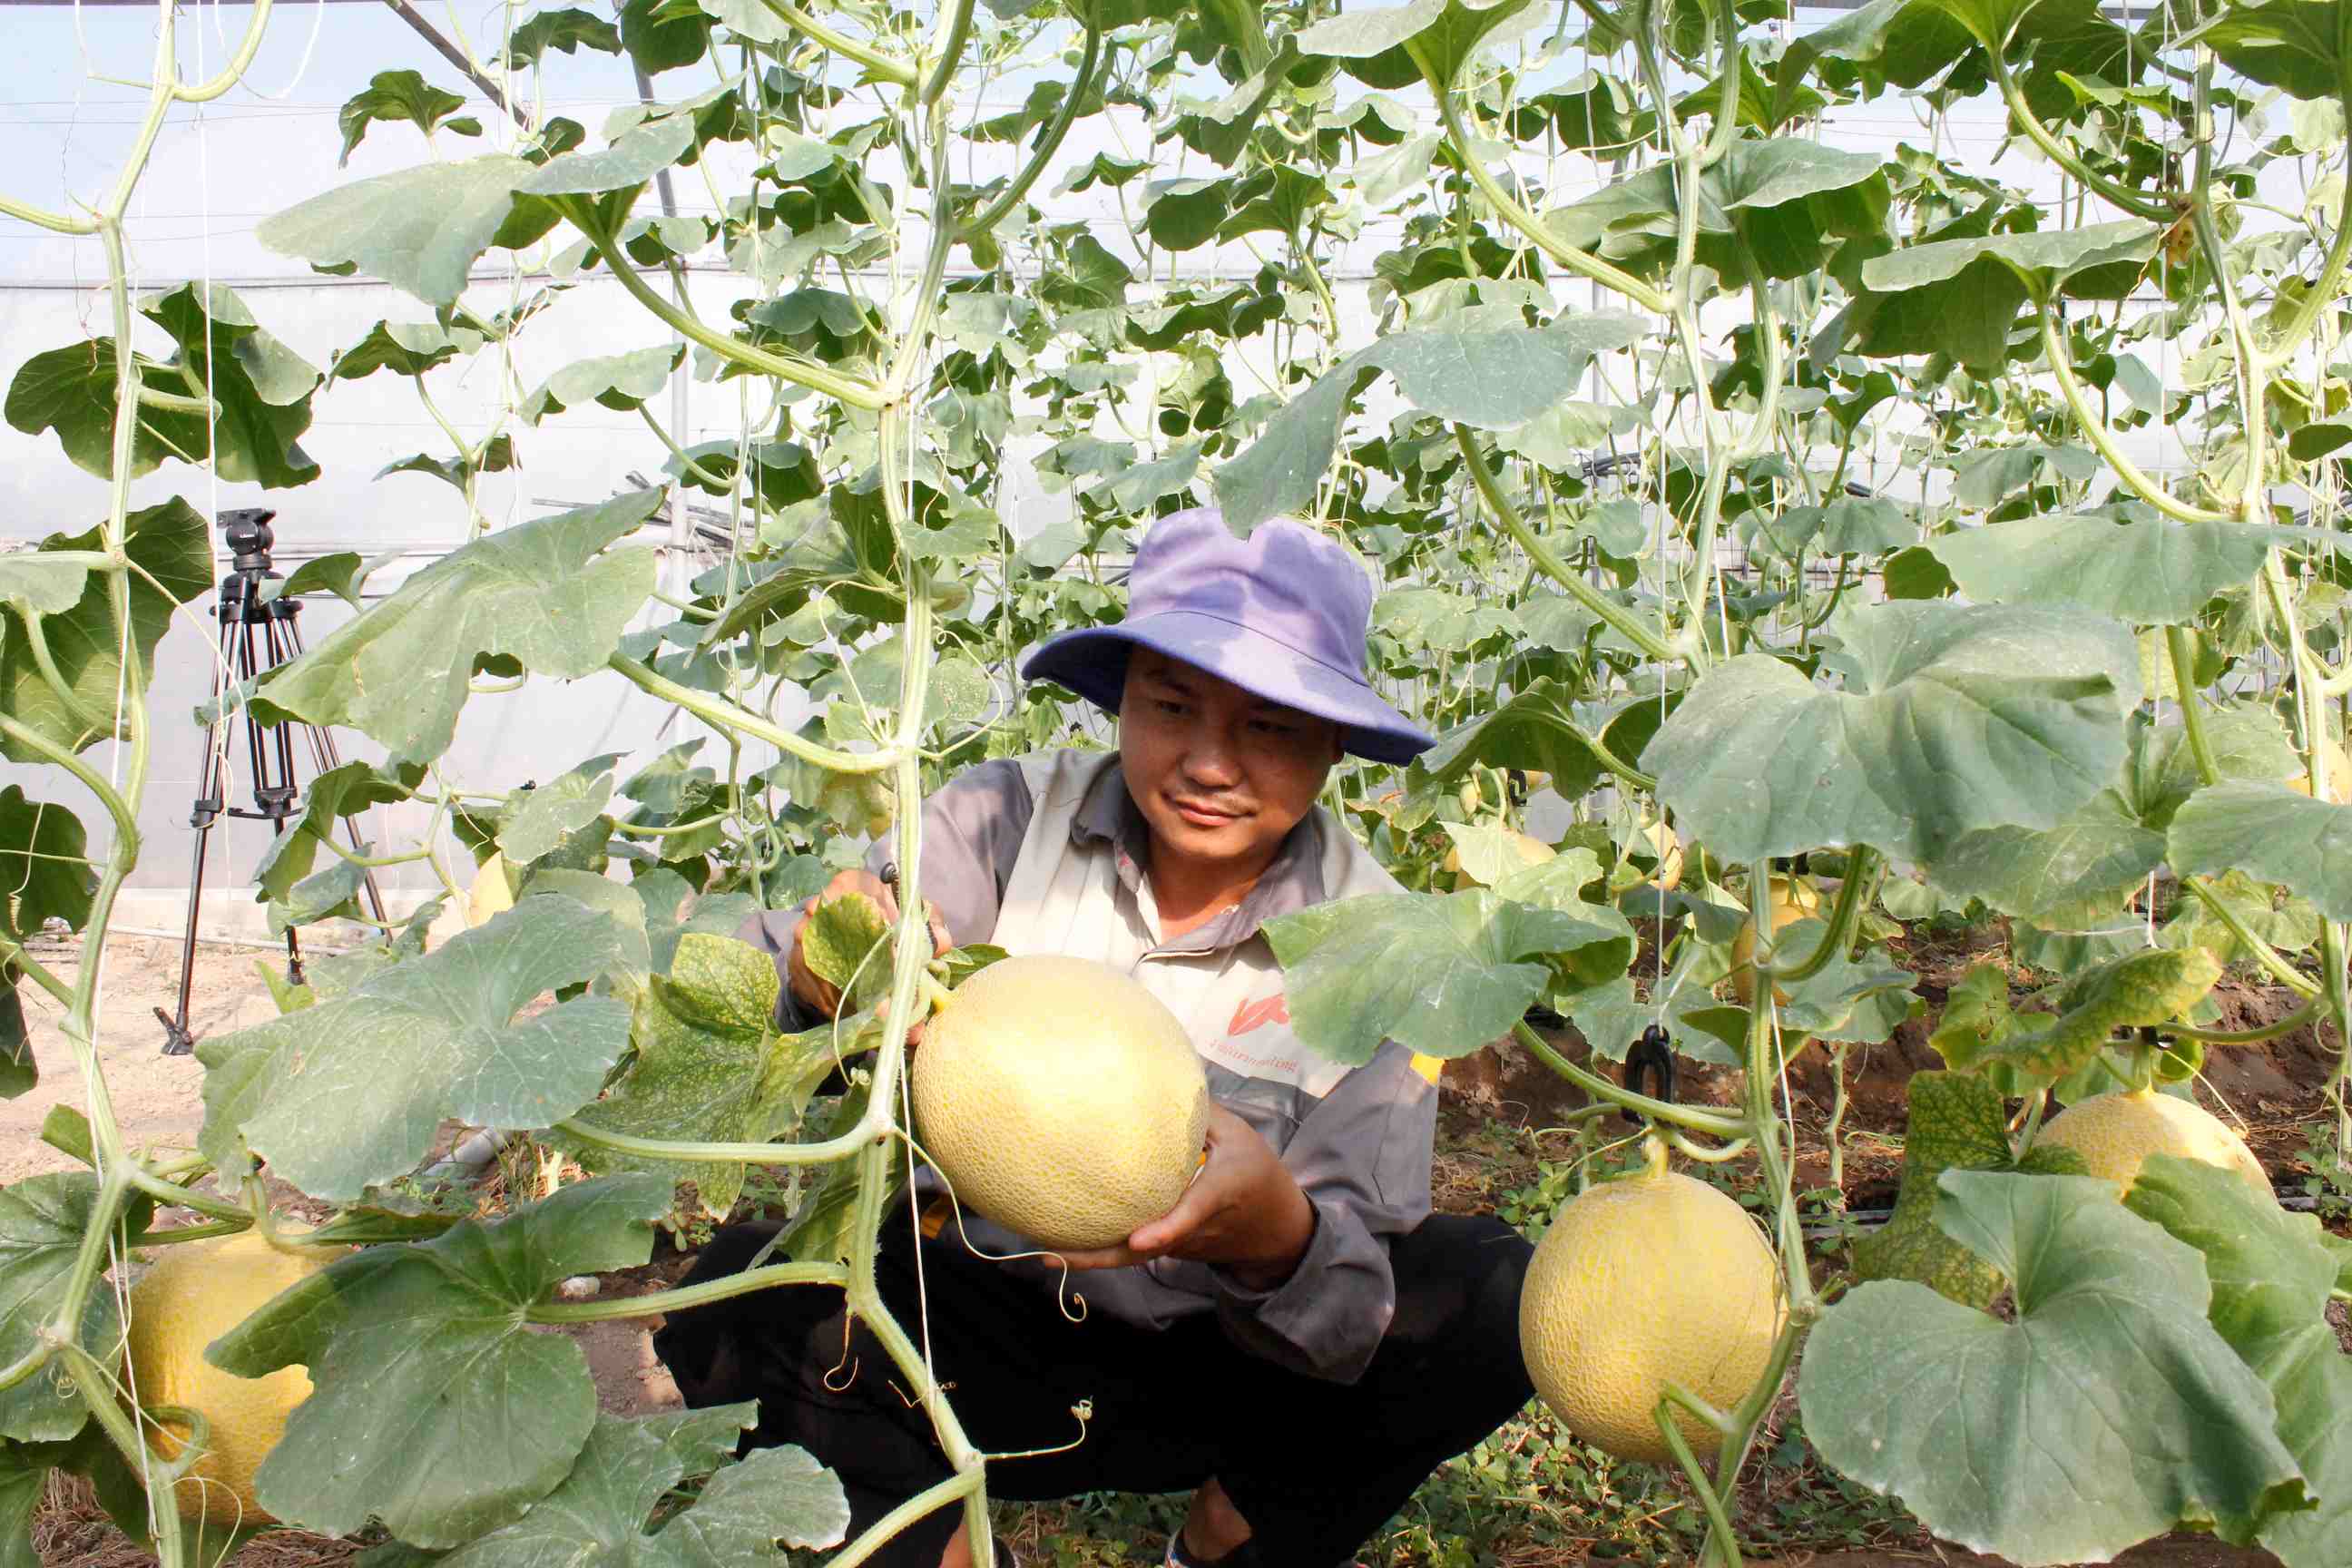 Mô hình ứng dụng công nghệ cao trồng dưa lưới trong nhà màng cho lợi nhuận tốt tại xã Xuân Trường, huyện Xuân Lộc. Ảnh: B.Nguyên